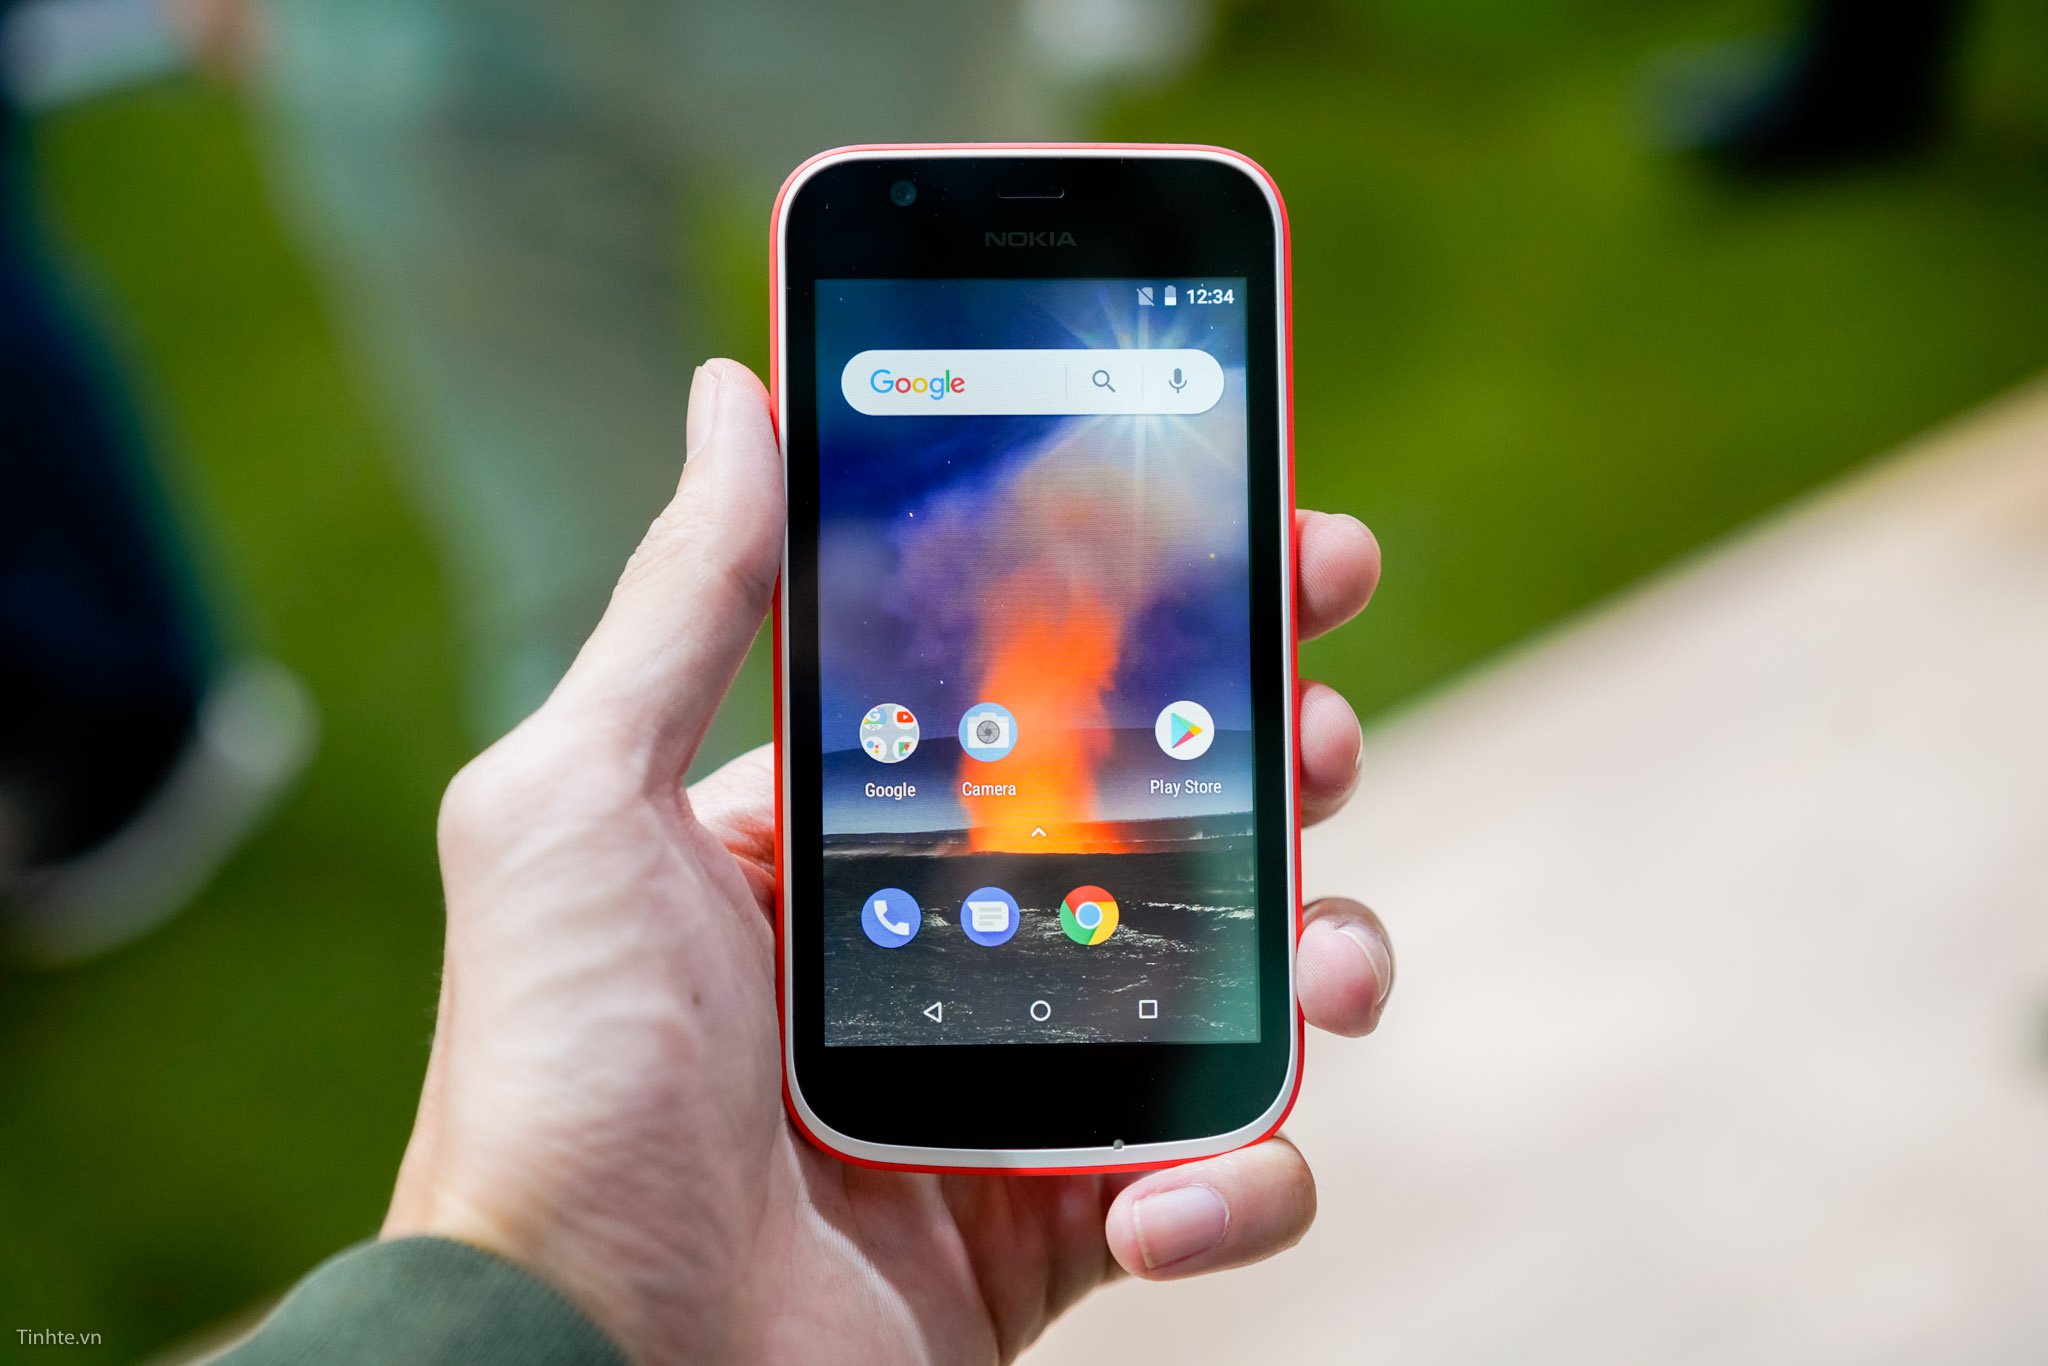 Nokia 1 Plus sẽ dùng màn hình 5" tỉ lệ 2:1, RAM 1GB, Android Go?